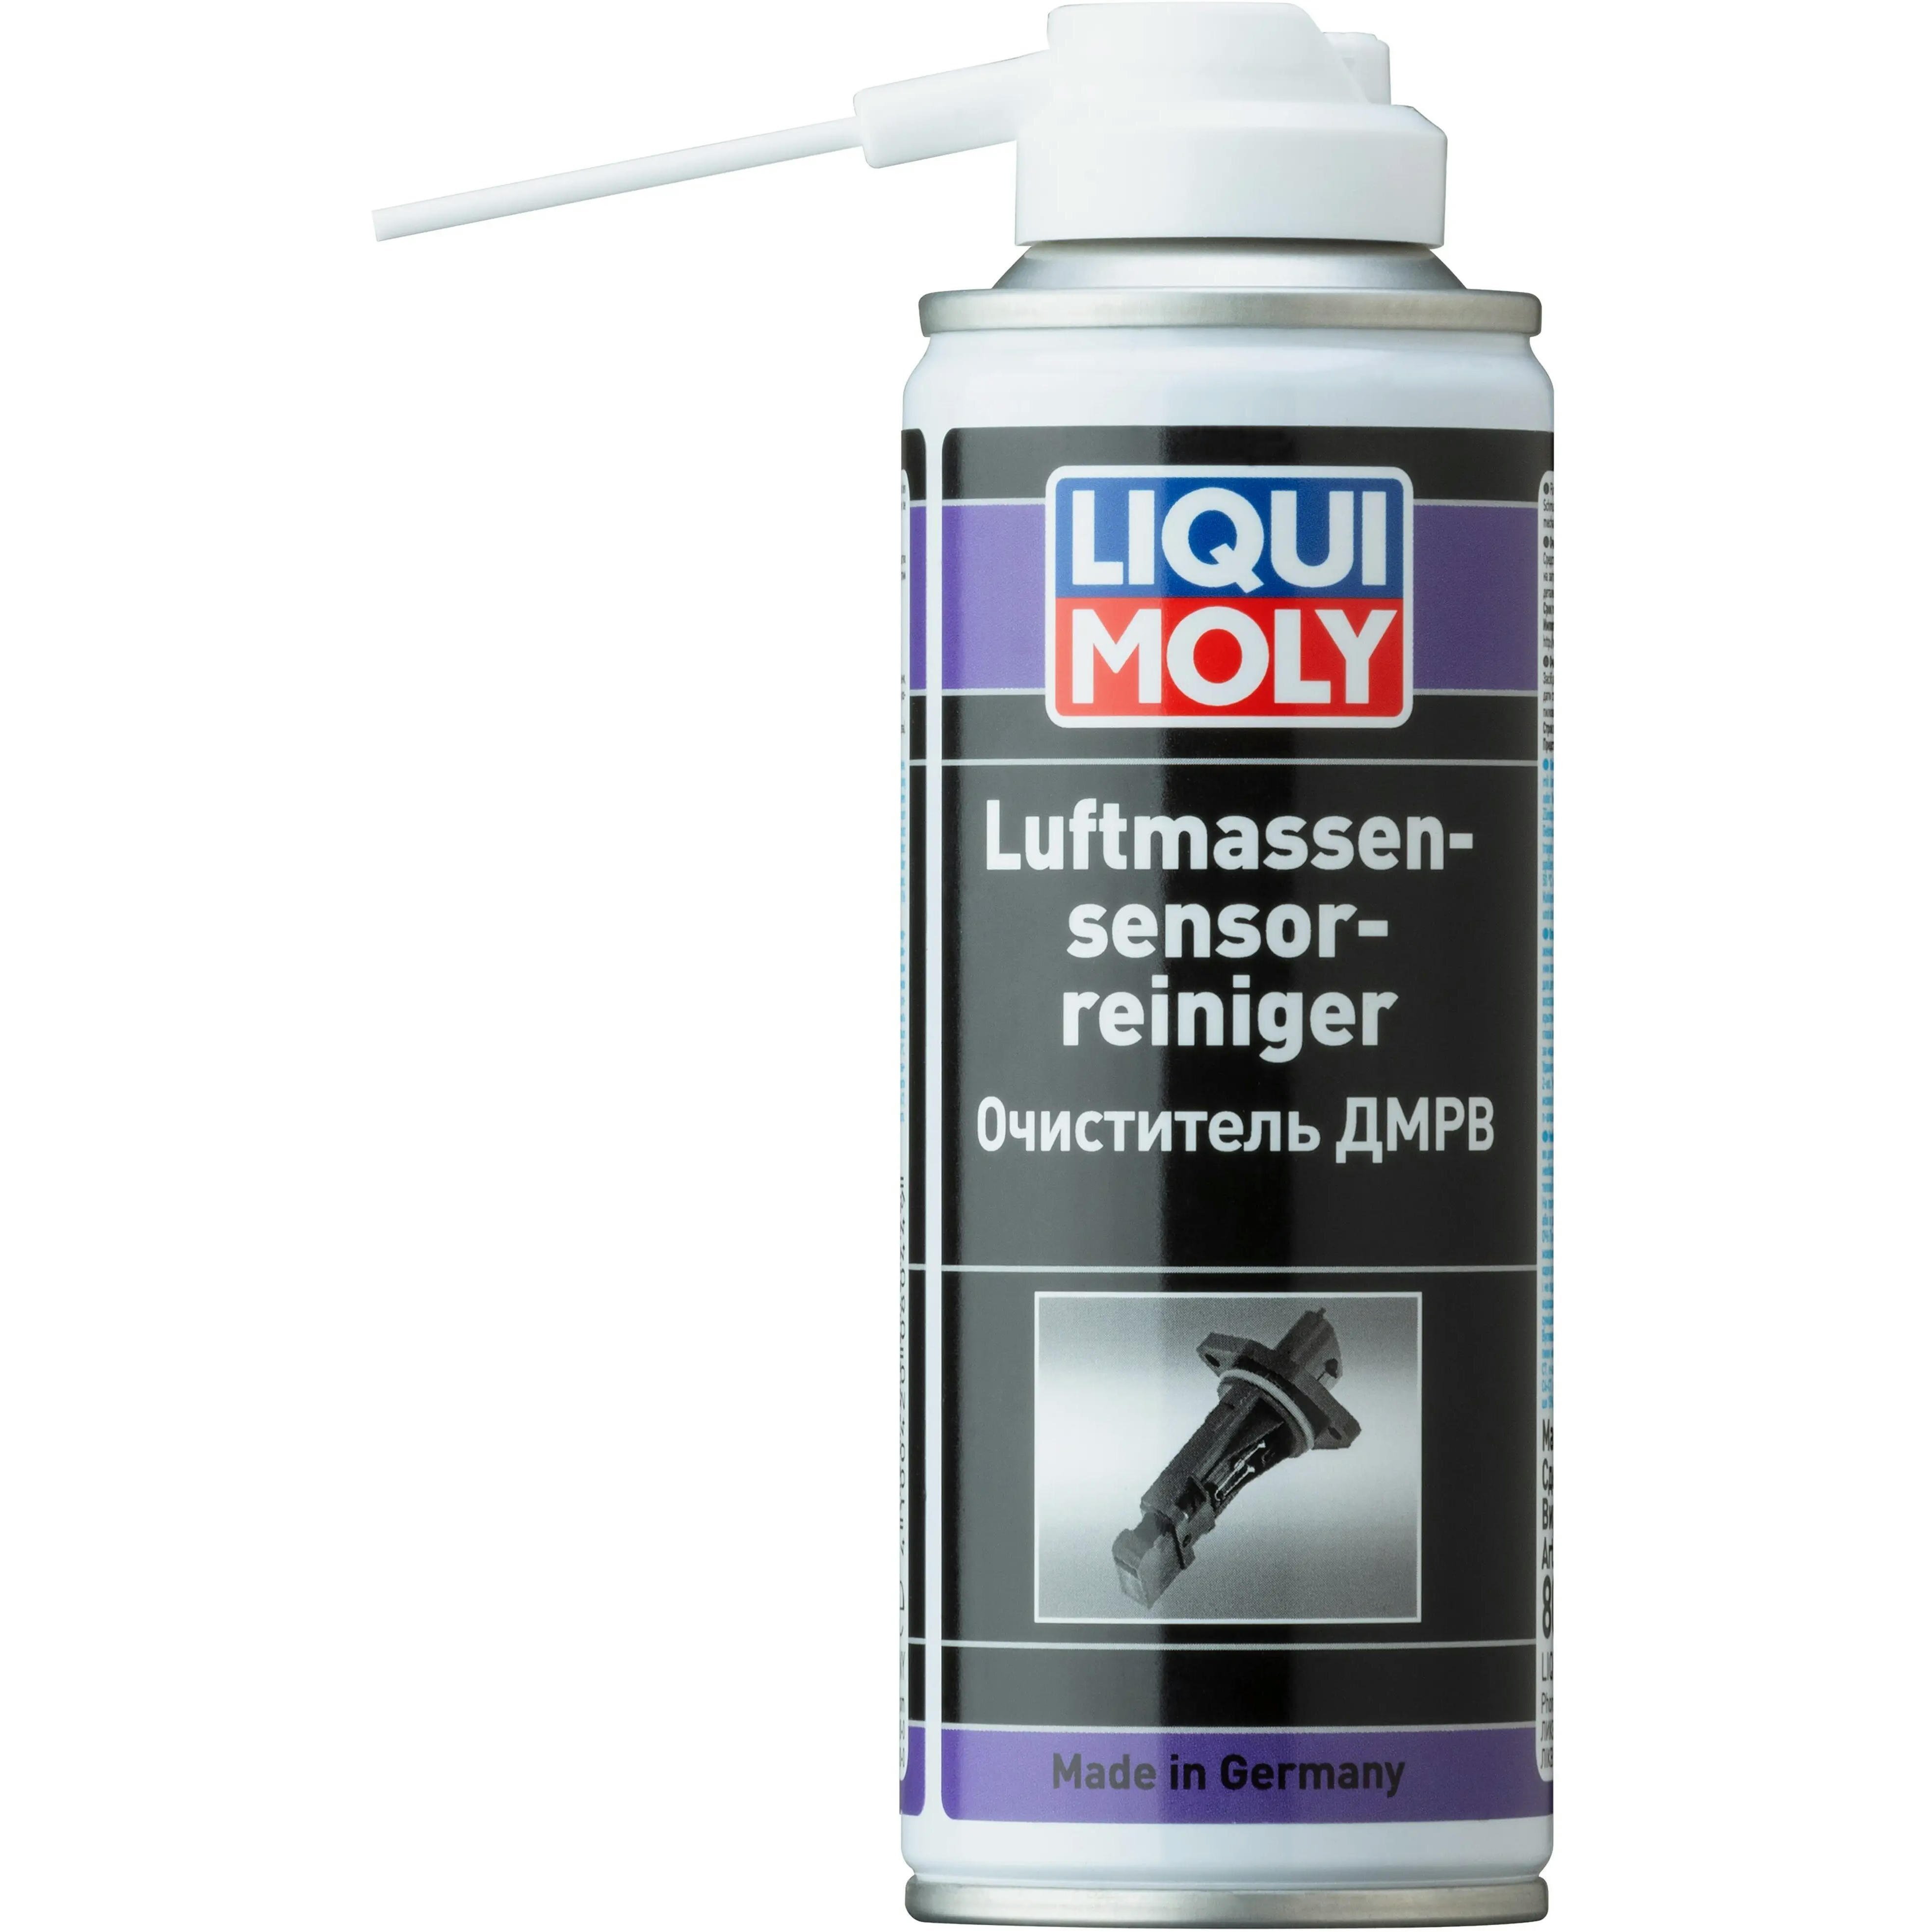 Очиститель Liqui Moly для ДМРВ Luftmassensensor-Reiniger 0,2л (4100420080449) фото 1